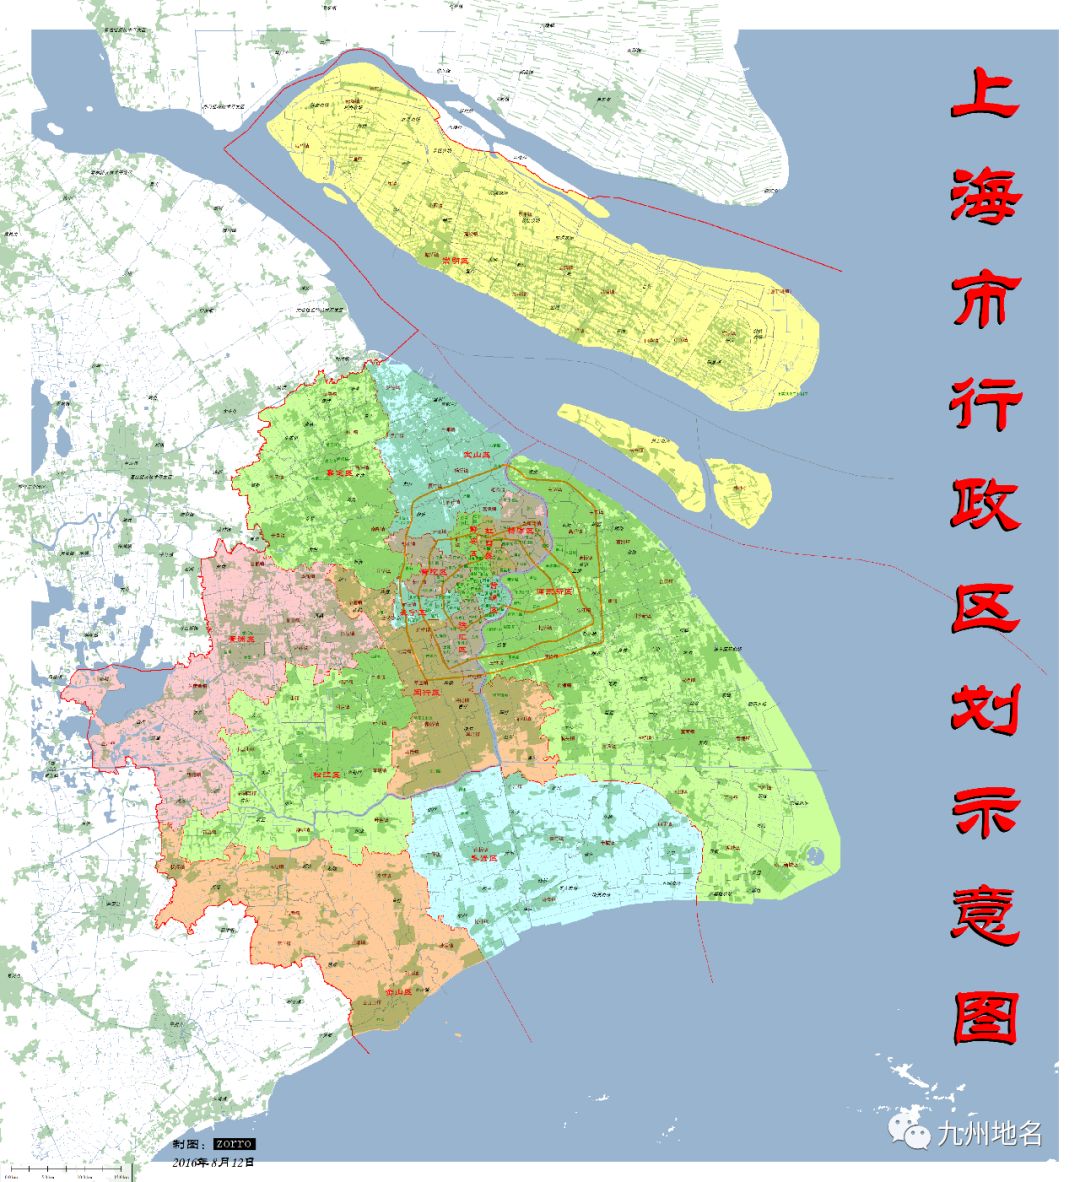 资讯上海市16区有哪些乡镇街道来看最新行政区划表上海发布今天